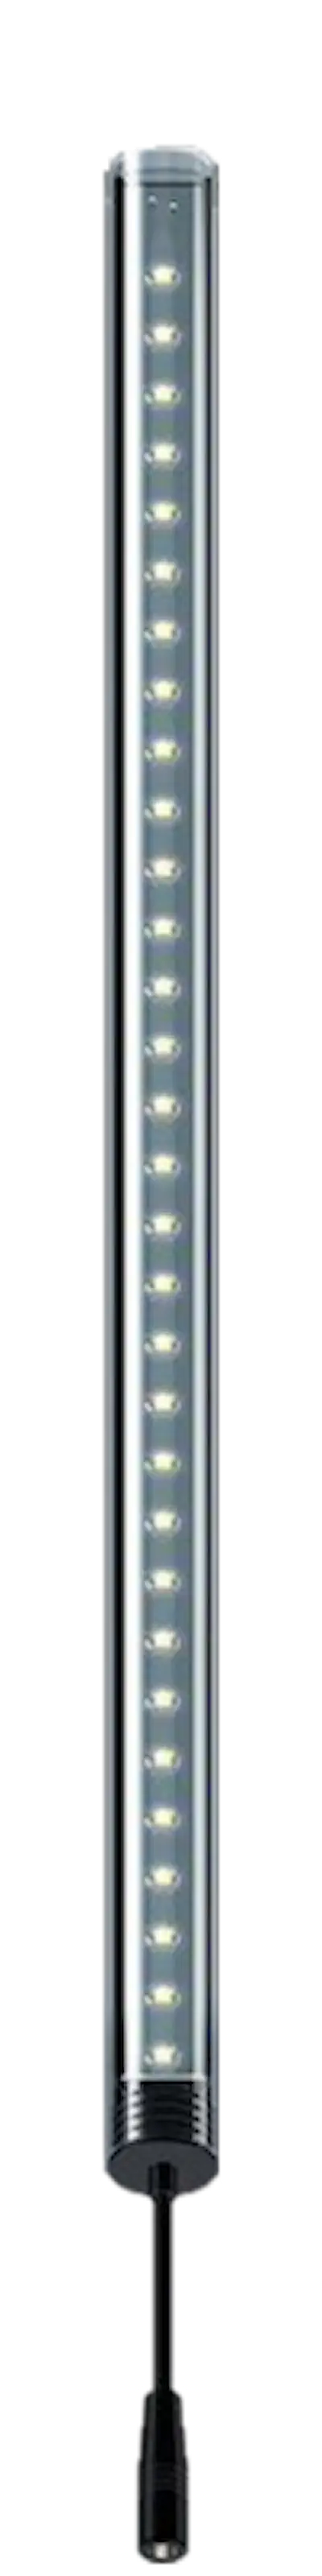 LightWave LED Complete Set, 430 - 510 mm